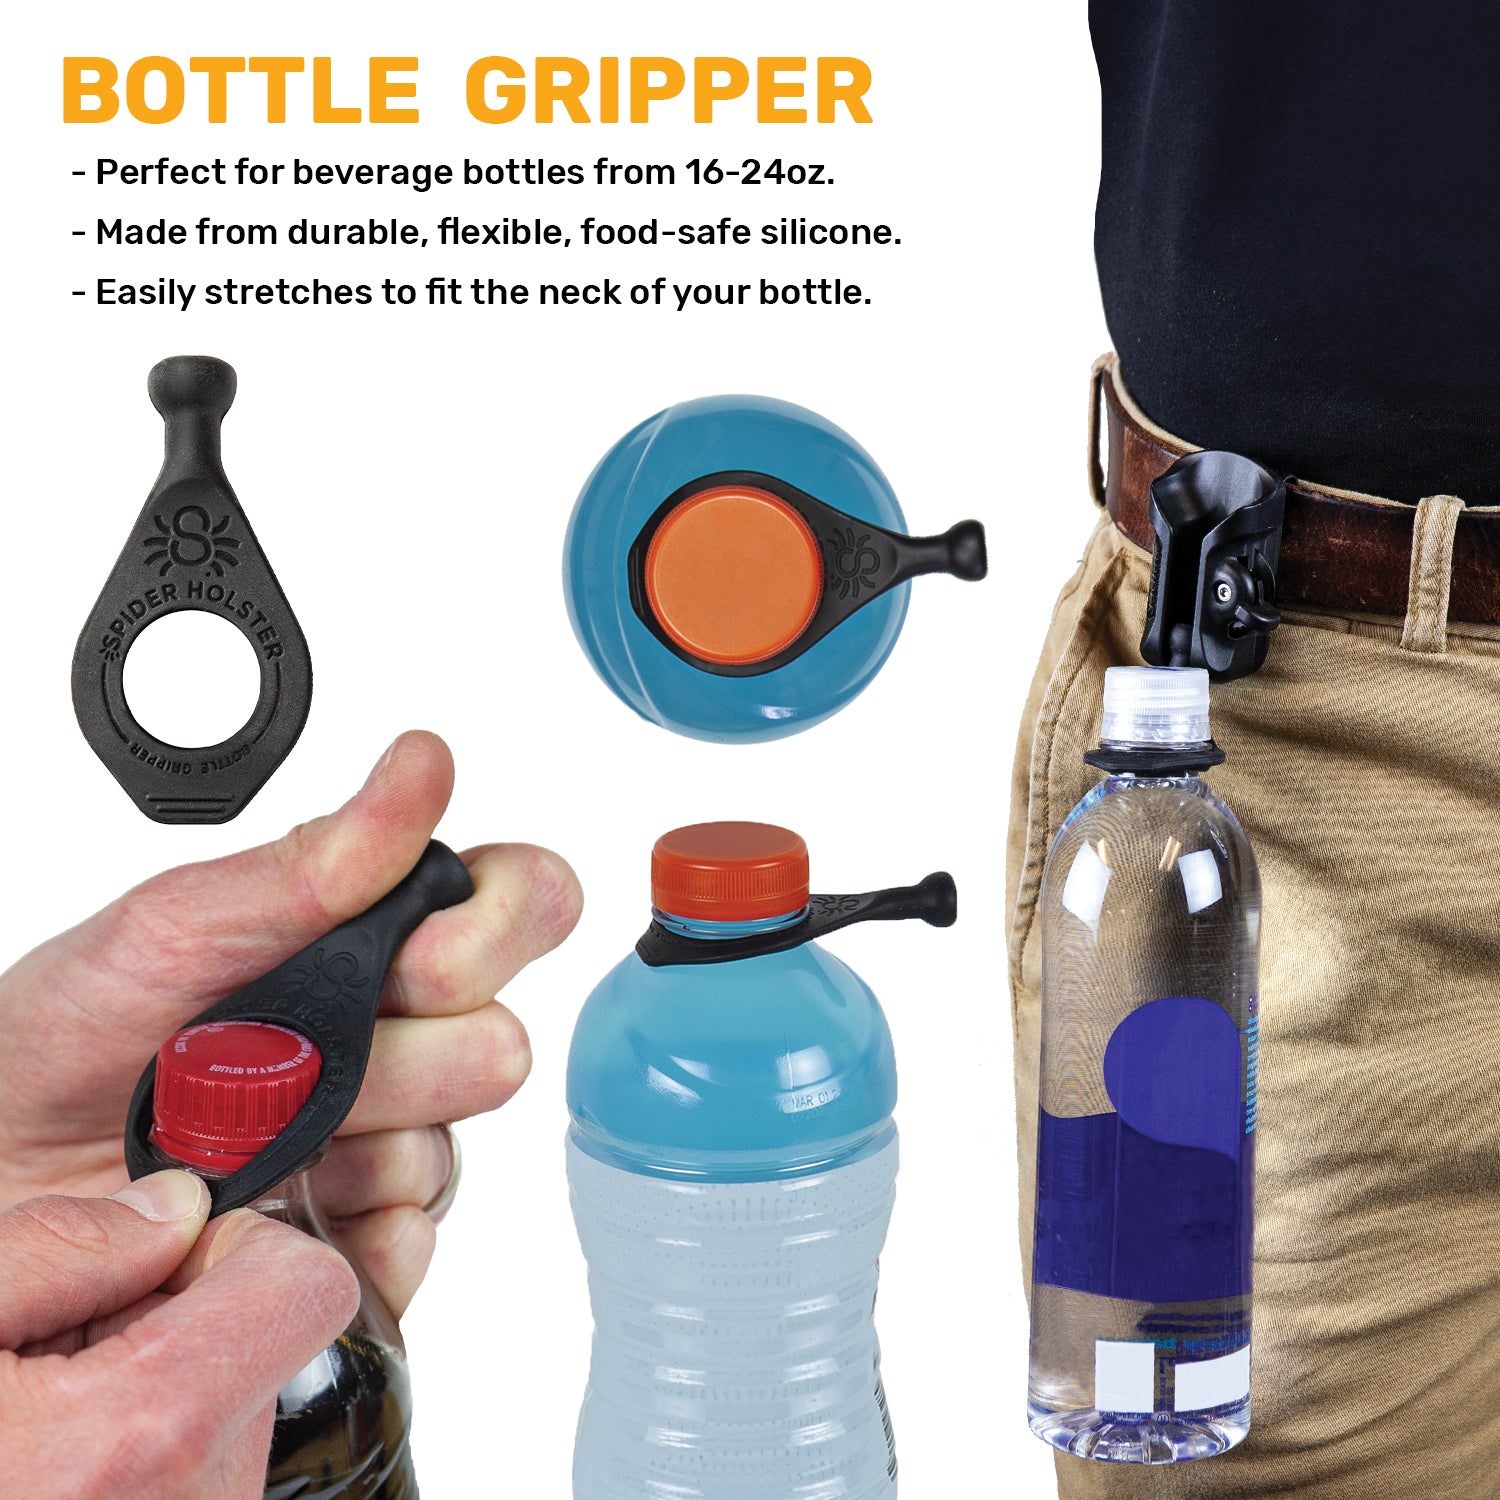 Bottle Grippers